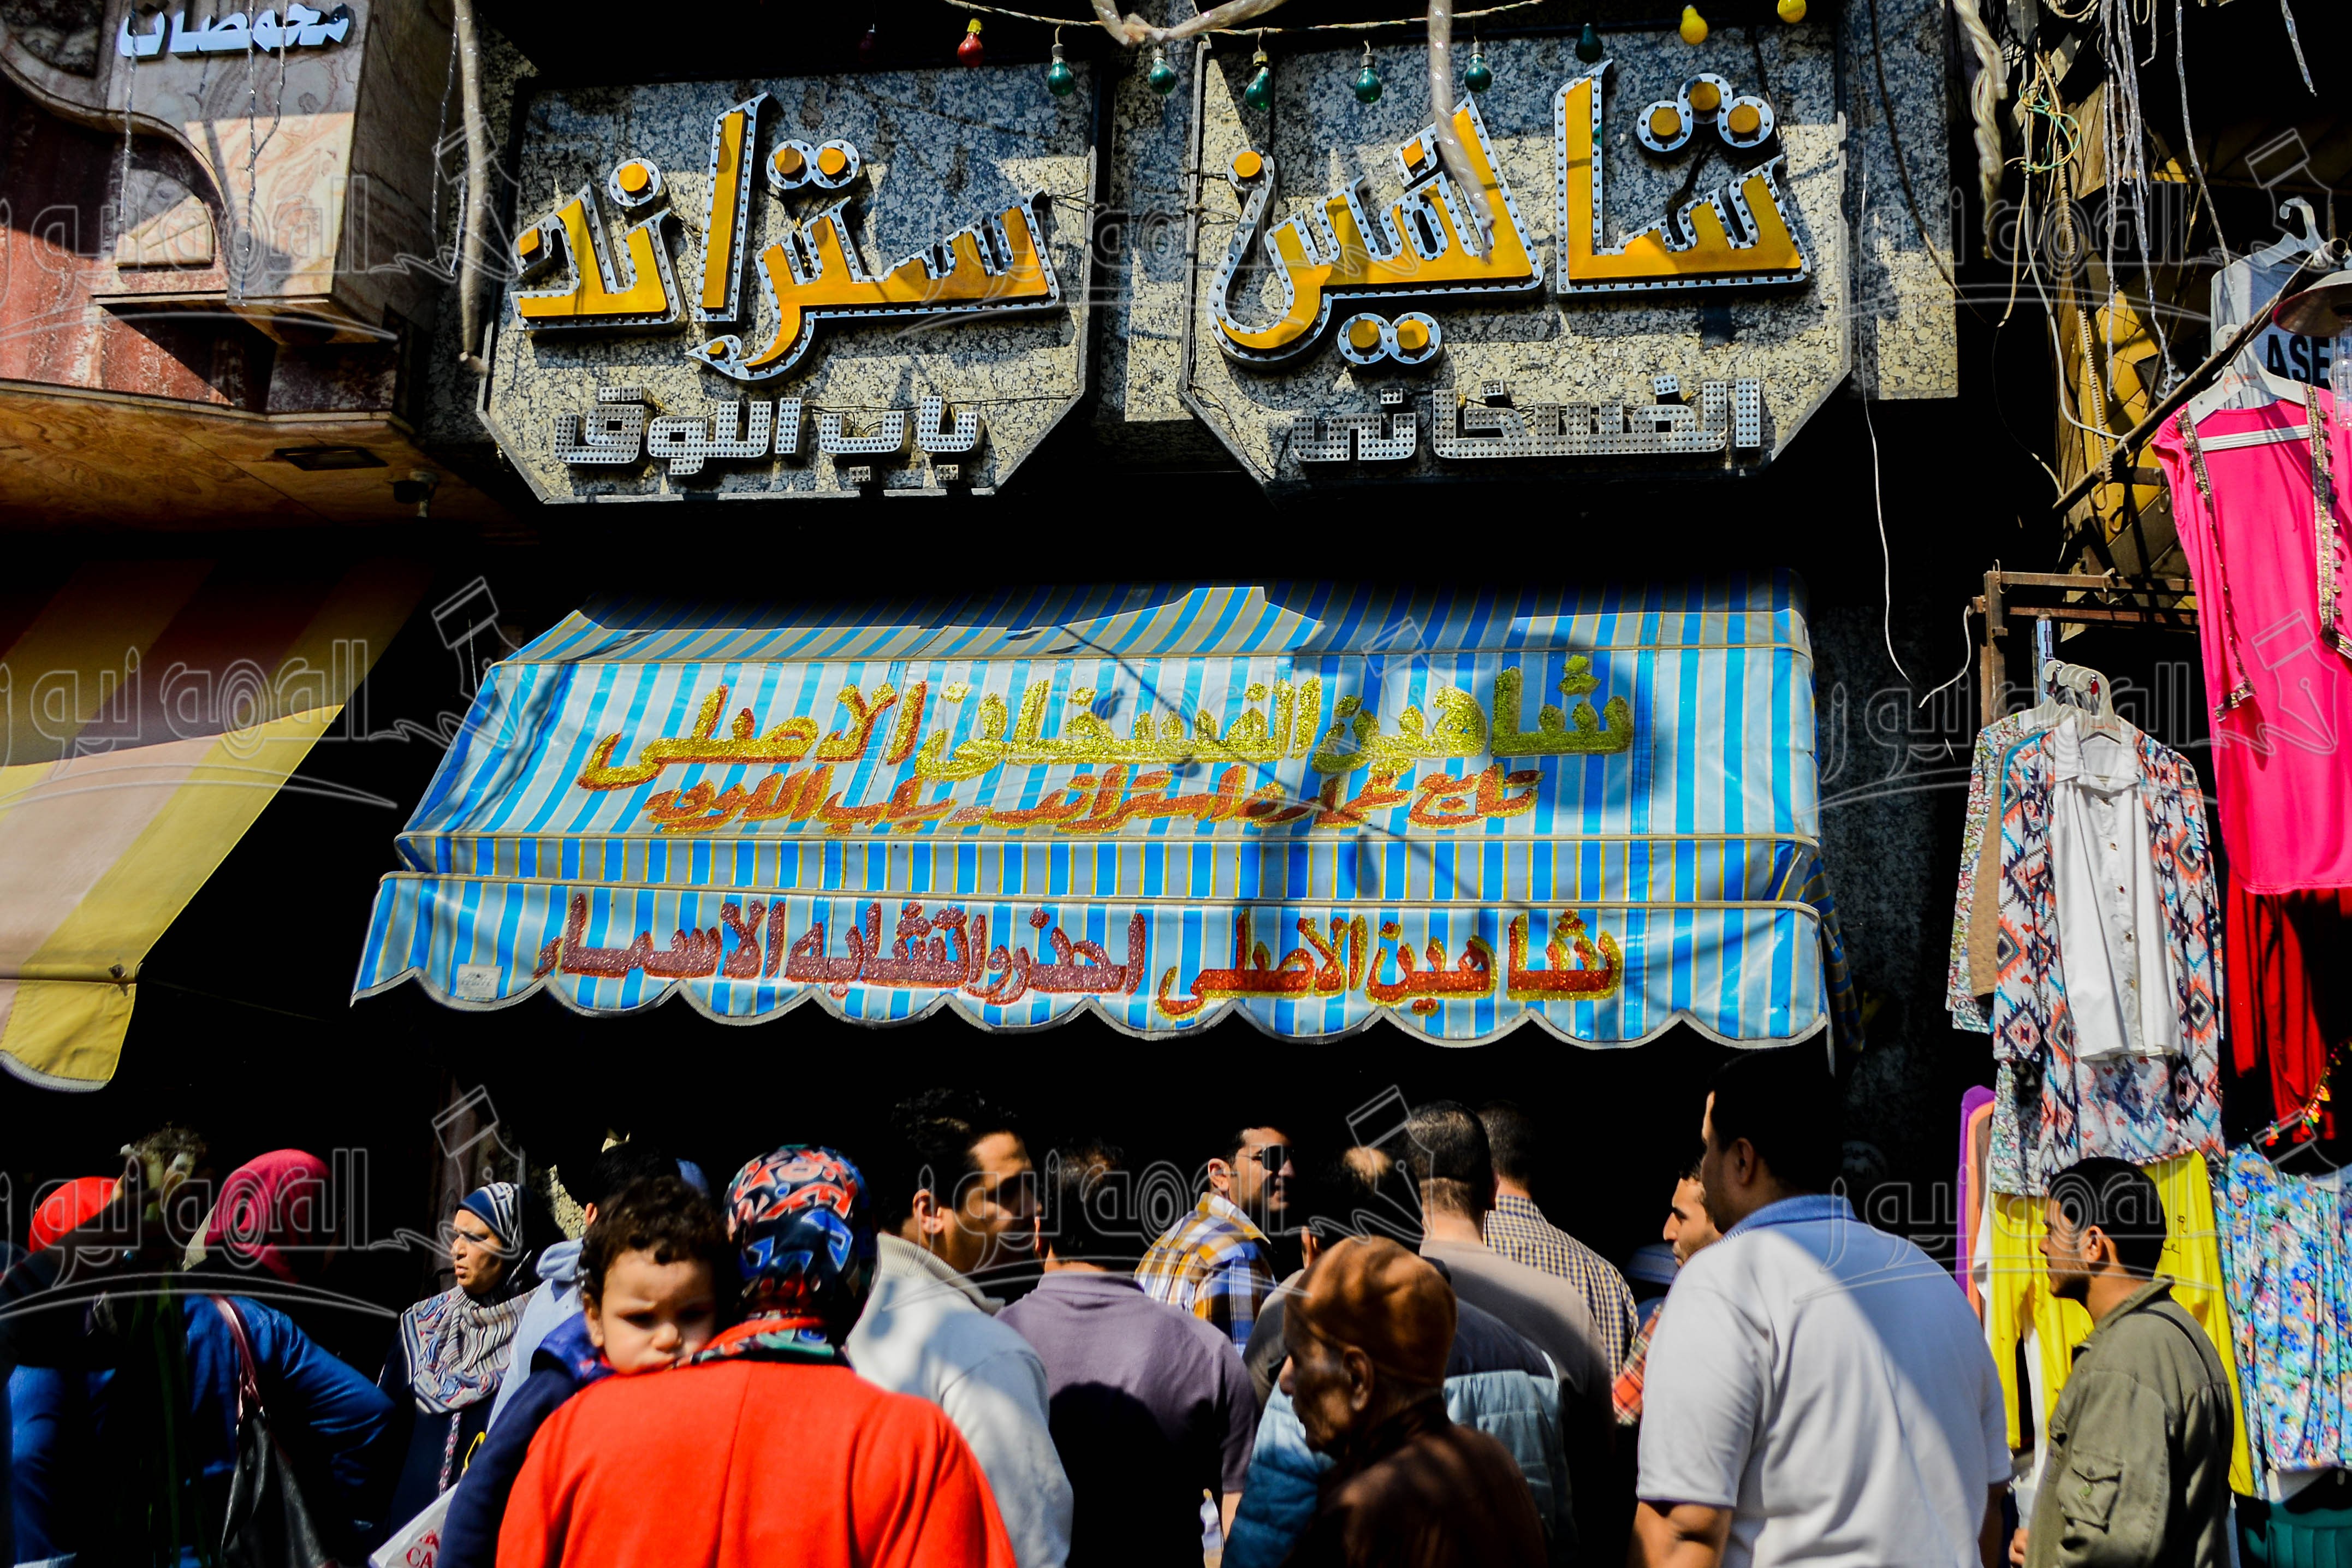 صور/إقبال المواطنين على شراء الرنجة والفسيخ استعدادا لشم النسيم